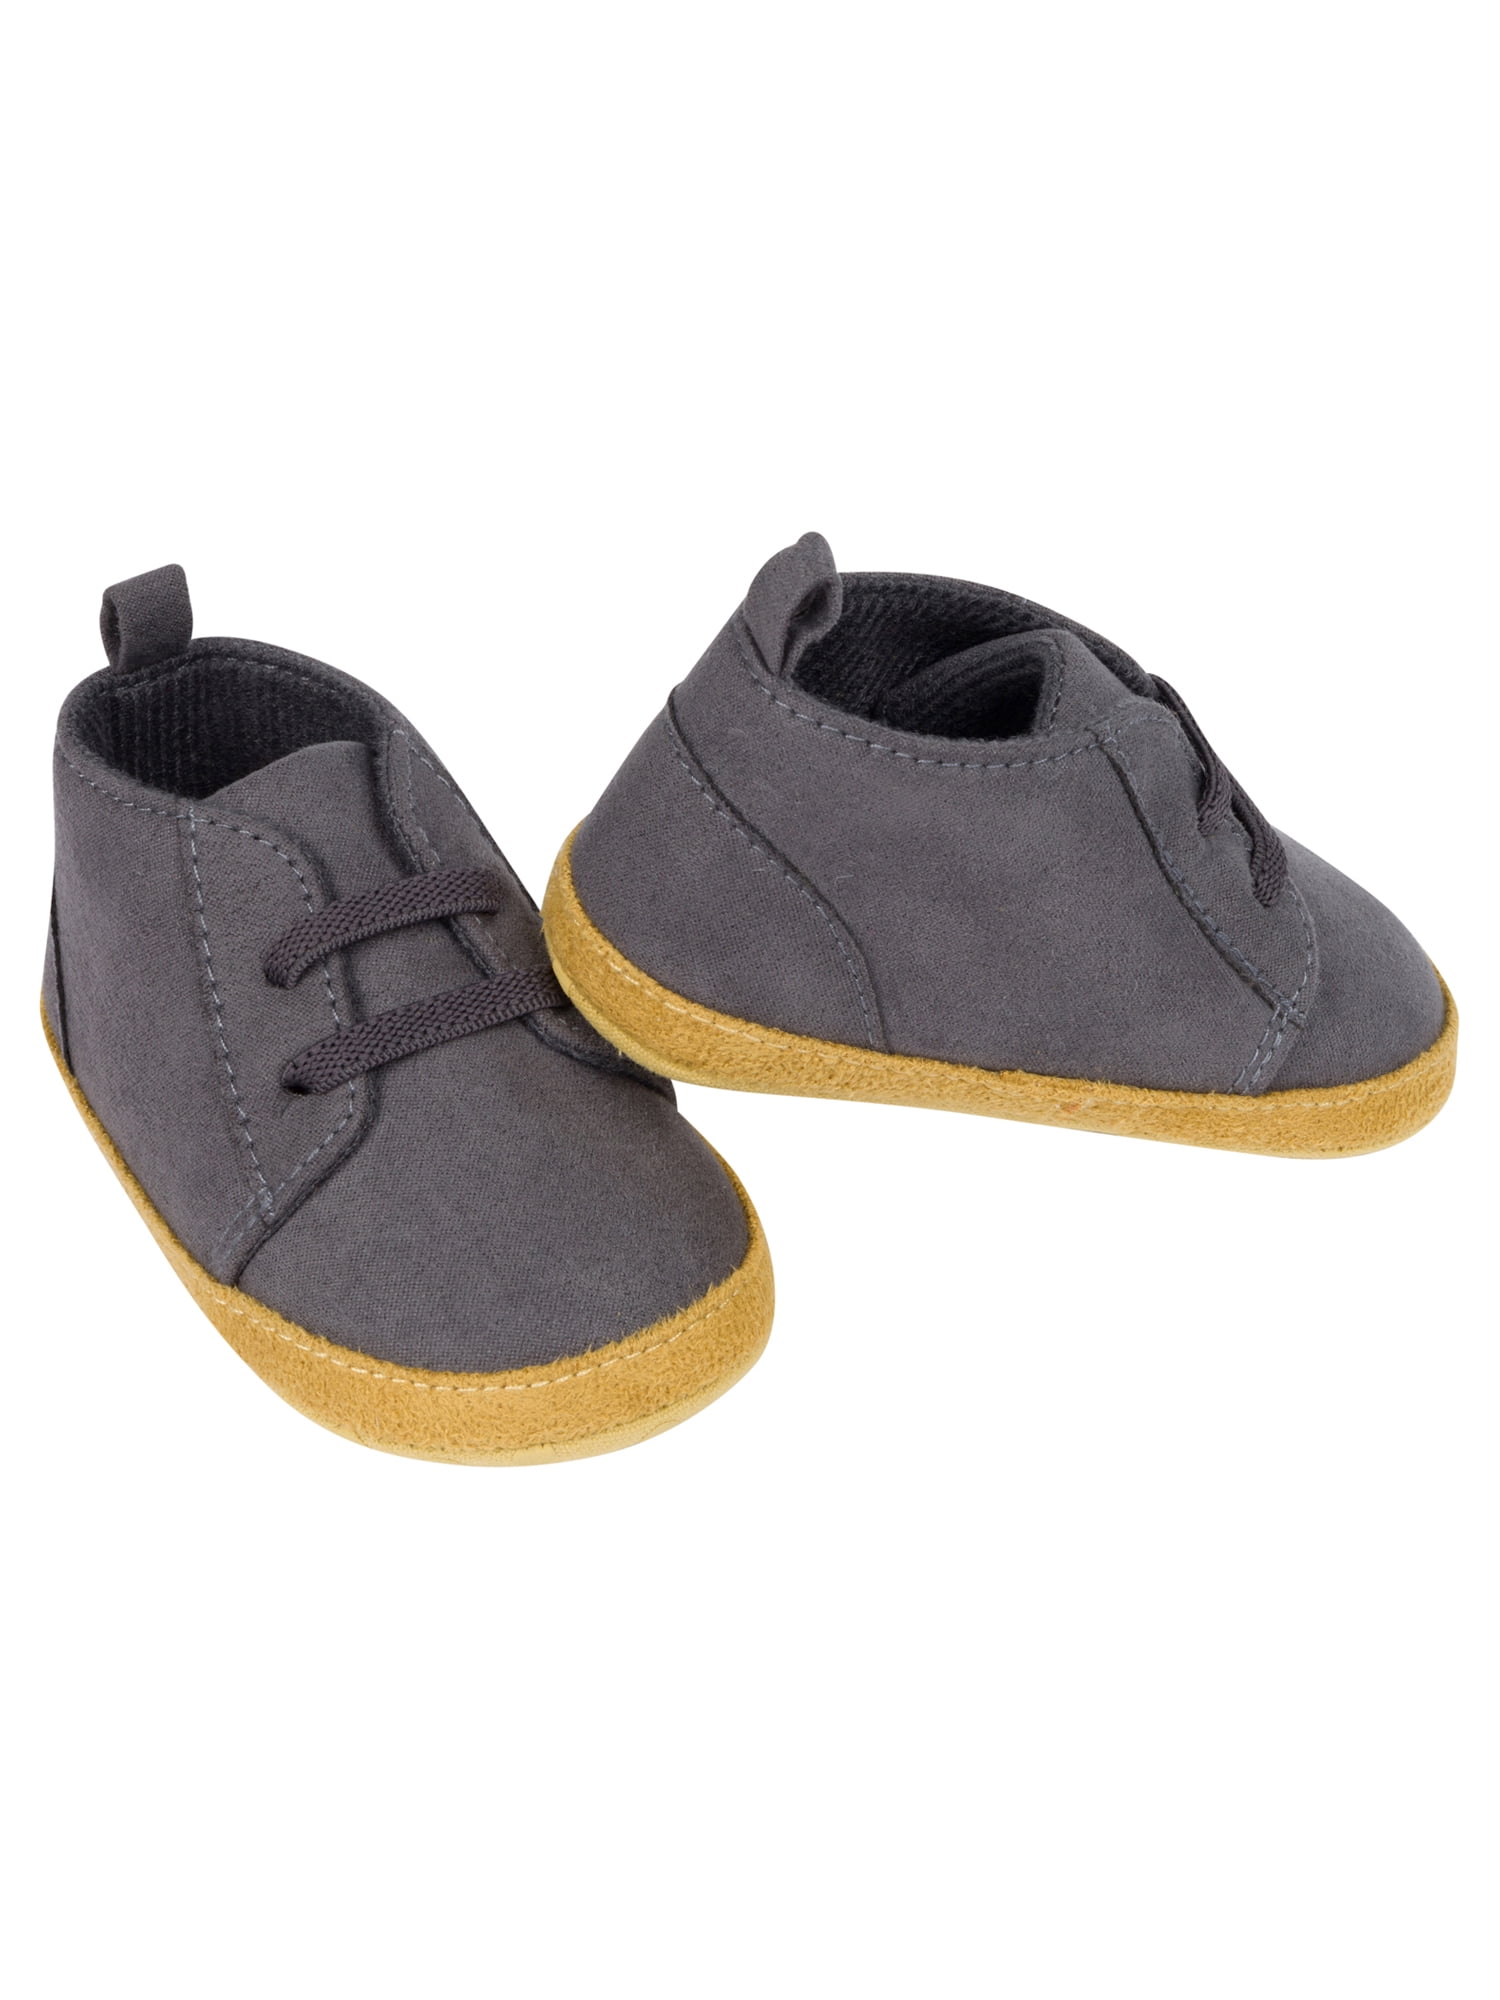 Chicco Baby Boys’ Scarpa Glasgow Shoe